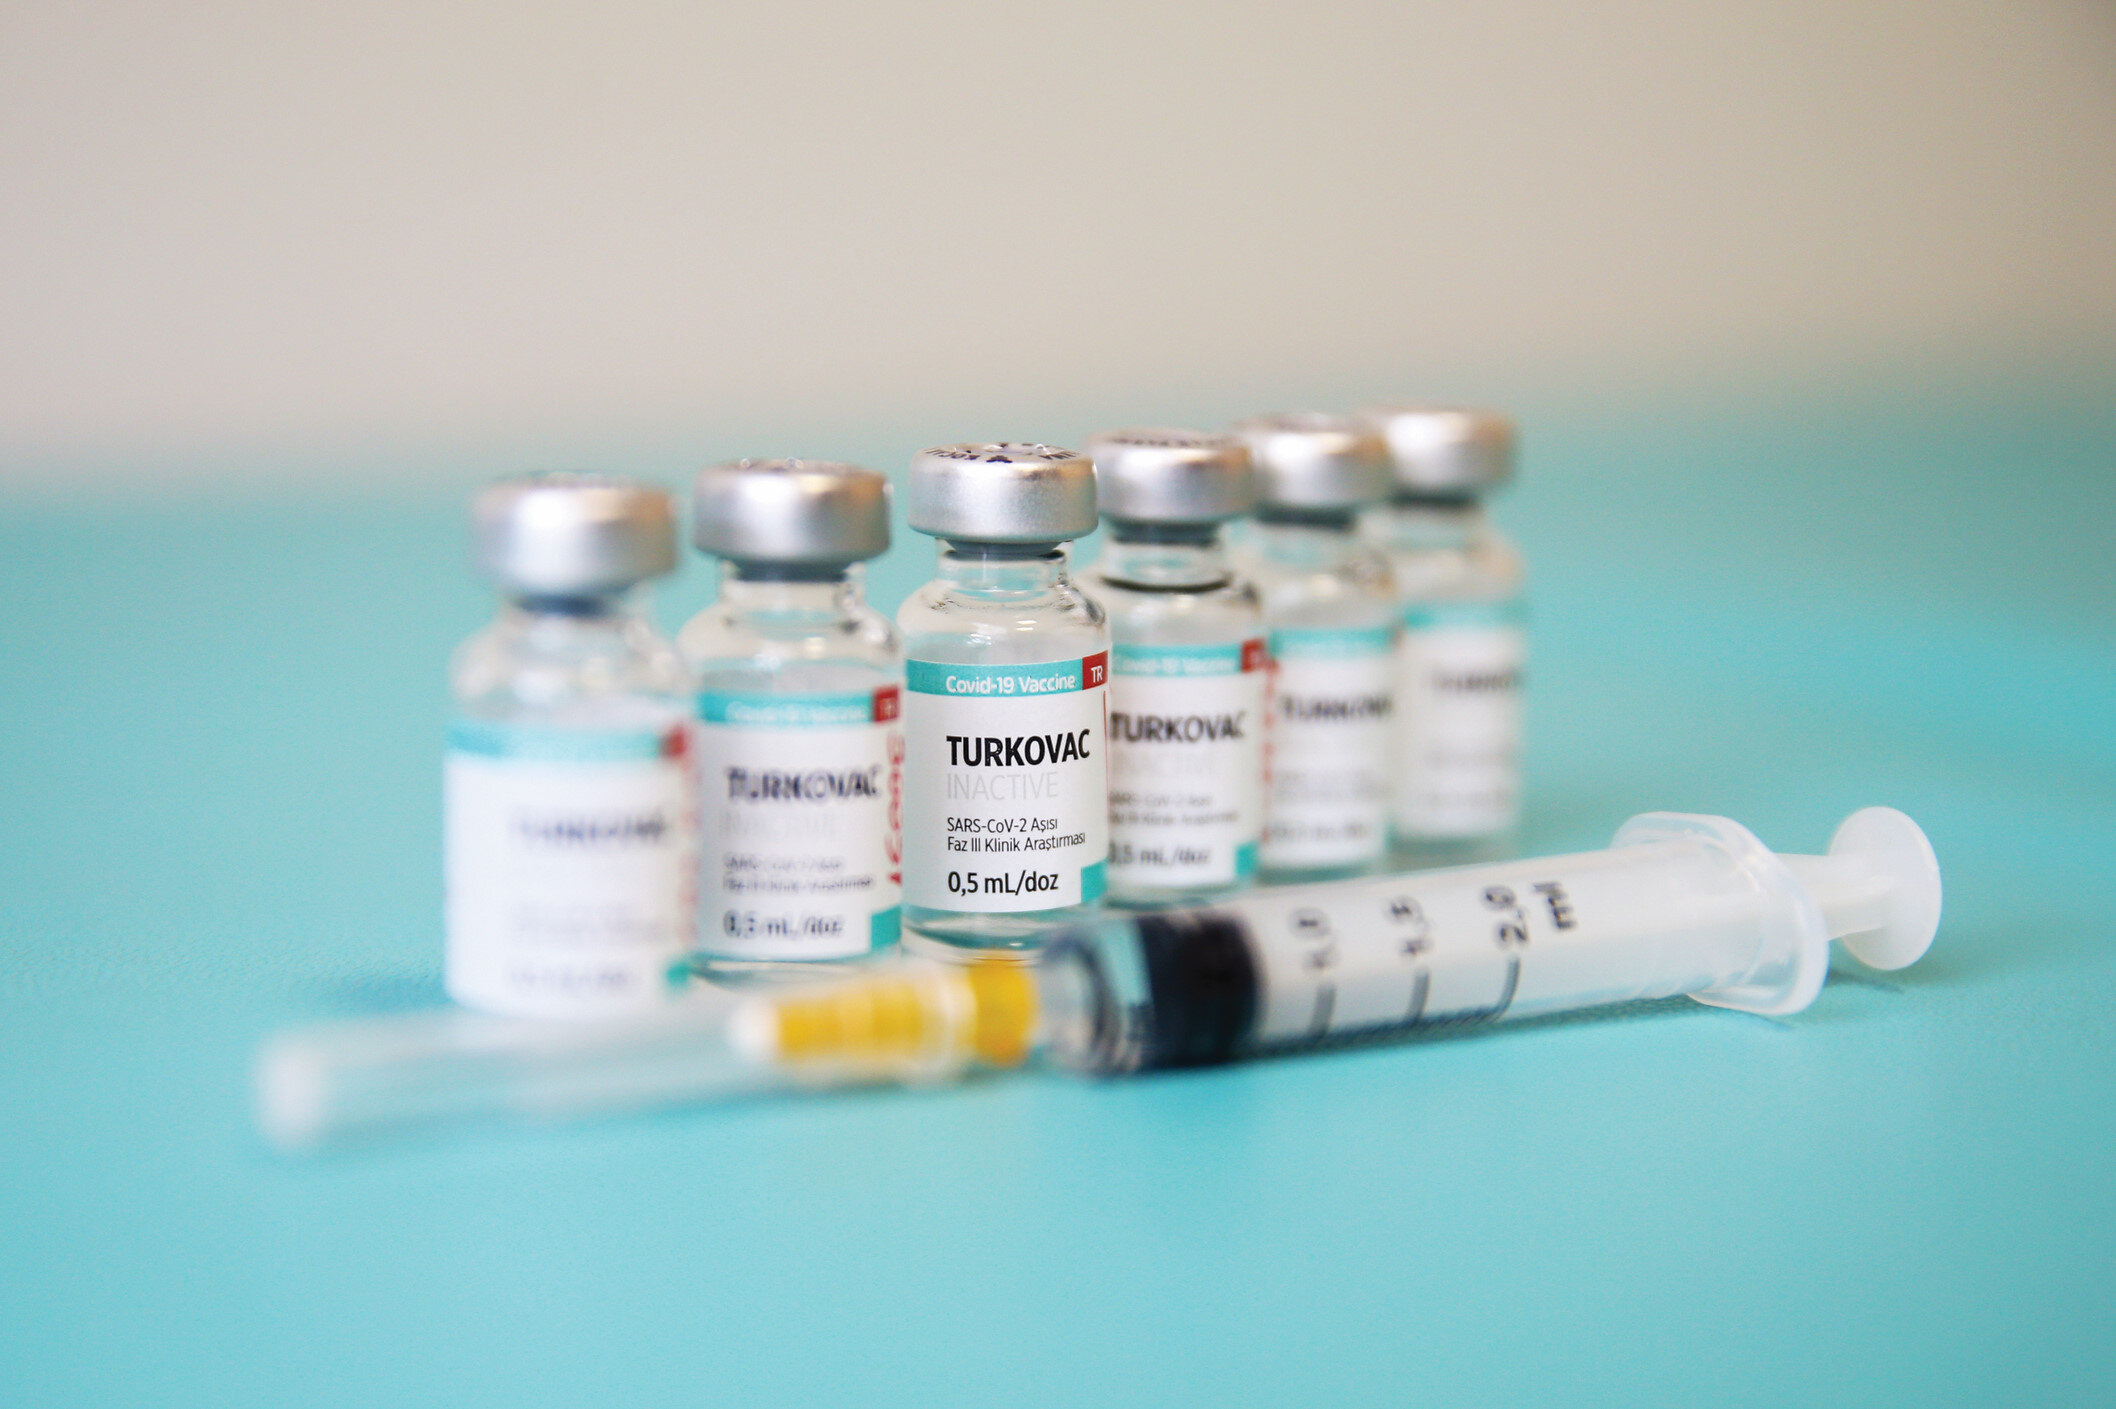 Turkovac aşısının mucidi Prof. Dr. Aykut Özdarendeli'den tavsiye: "Güvenli ve etkili bir aşı"